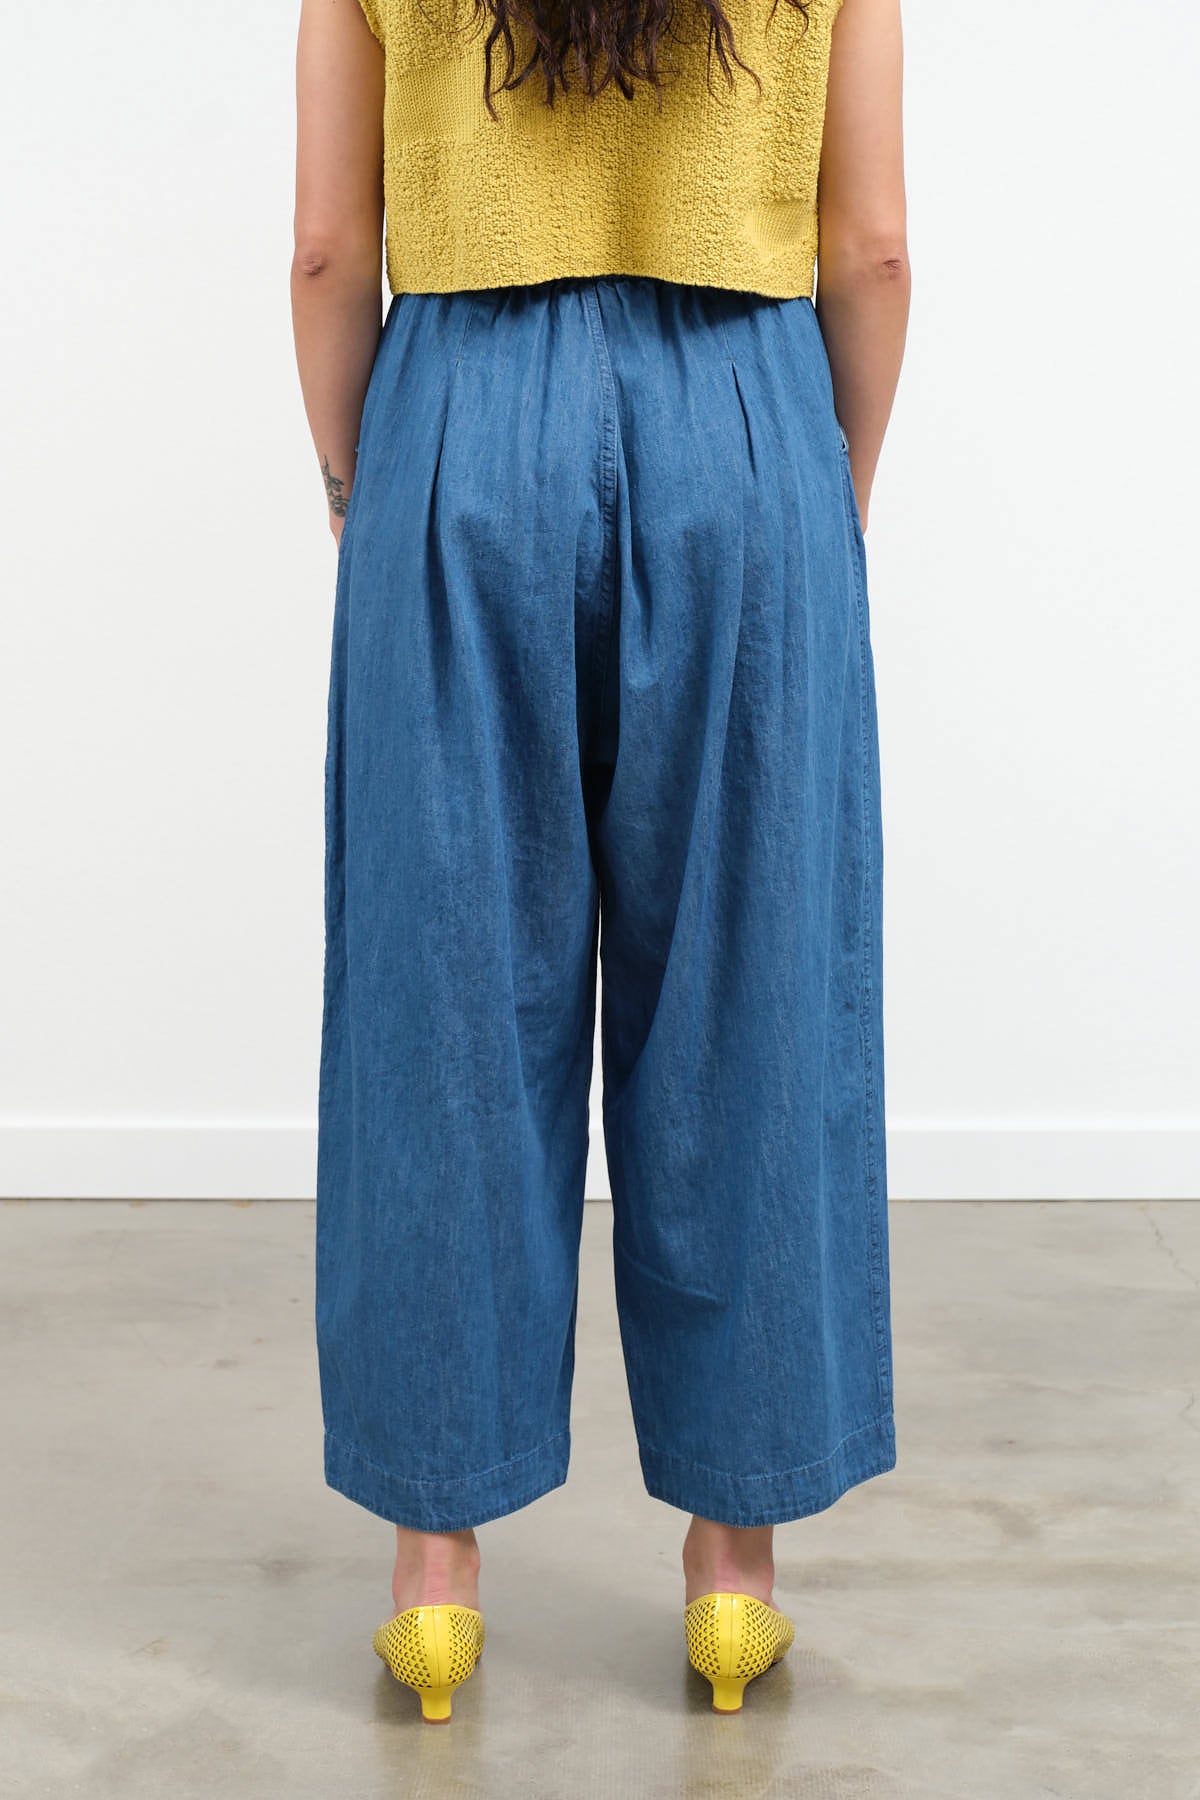 M-4XL Bottoms Cotton Linen Pants Straight Pants Trousers Harem Pants Solid  Loose | eBay